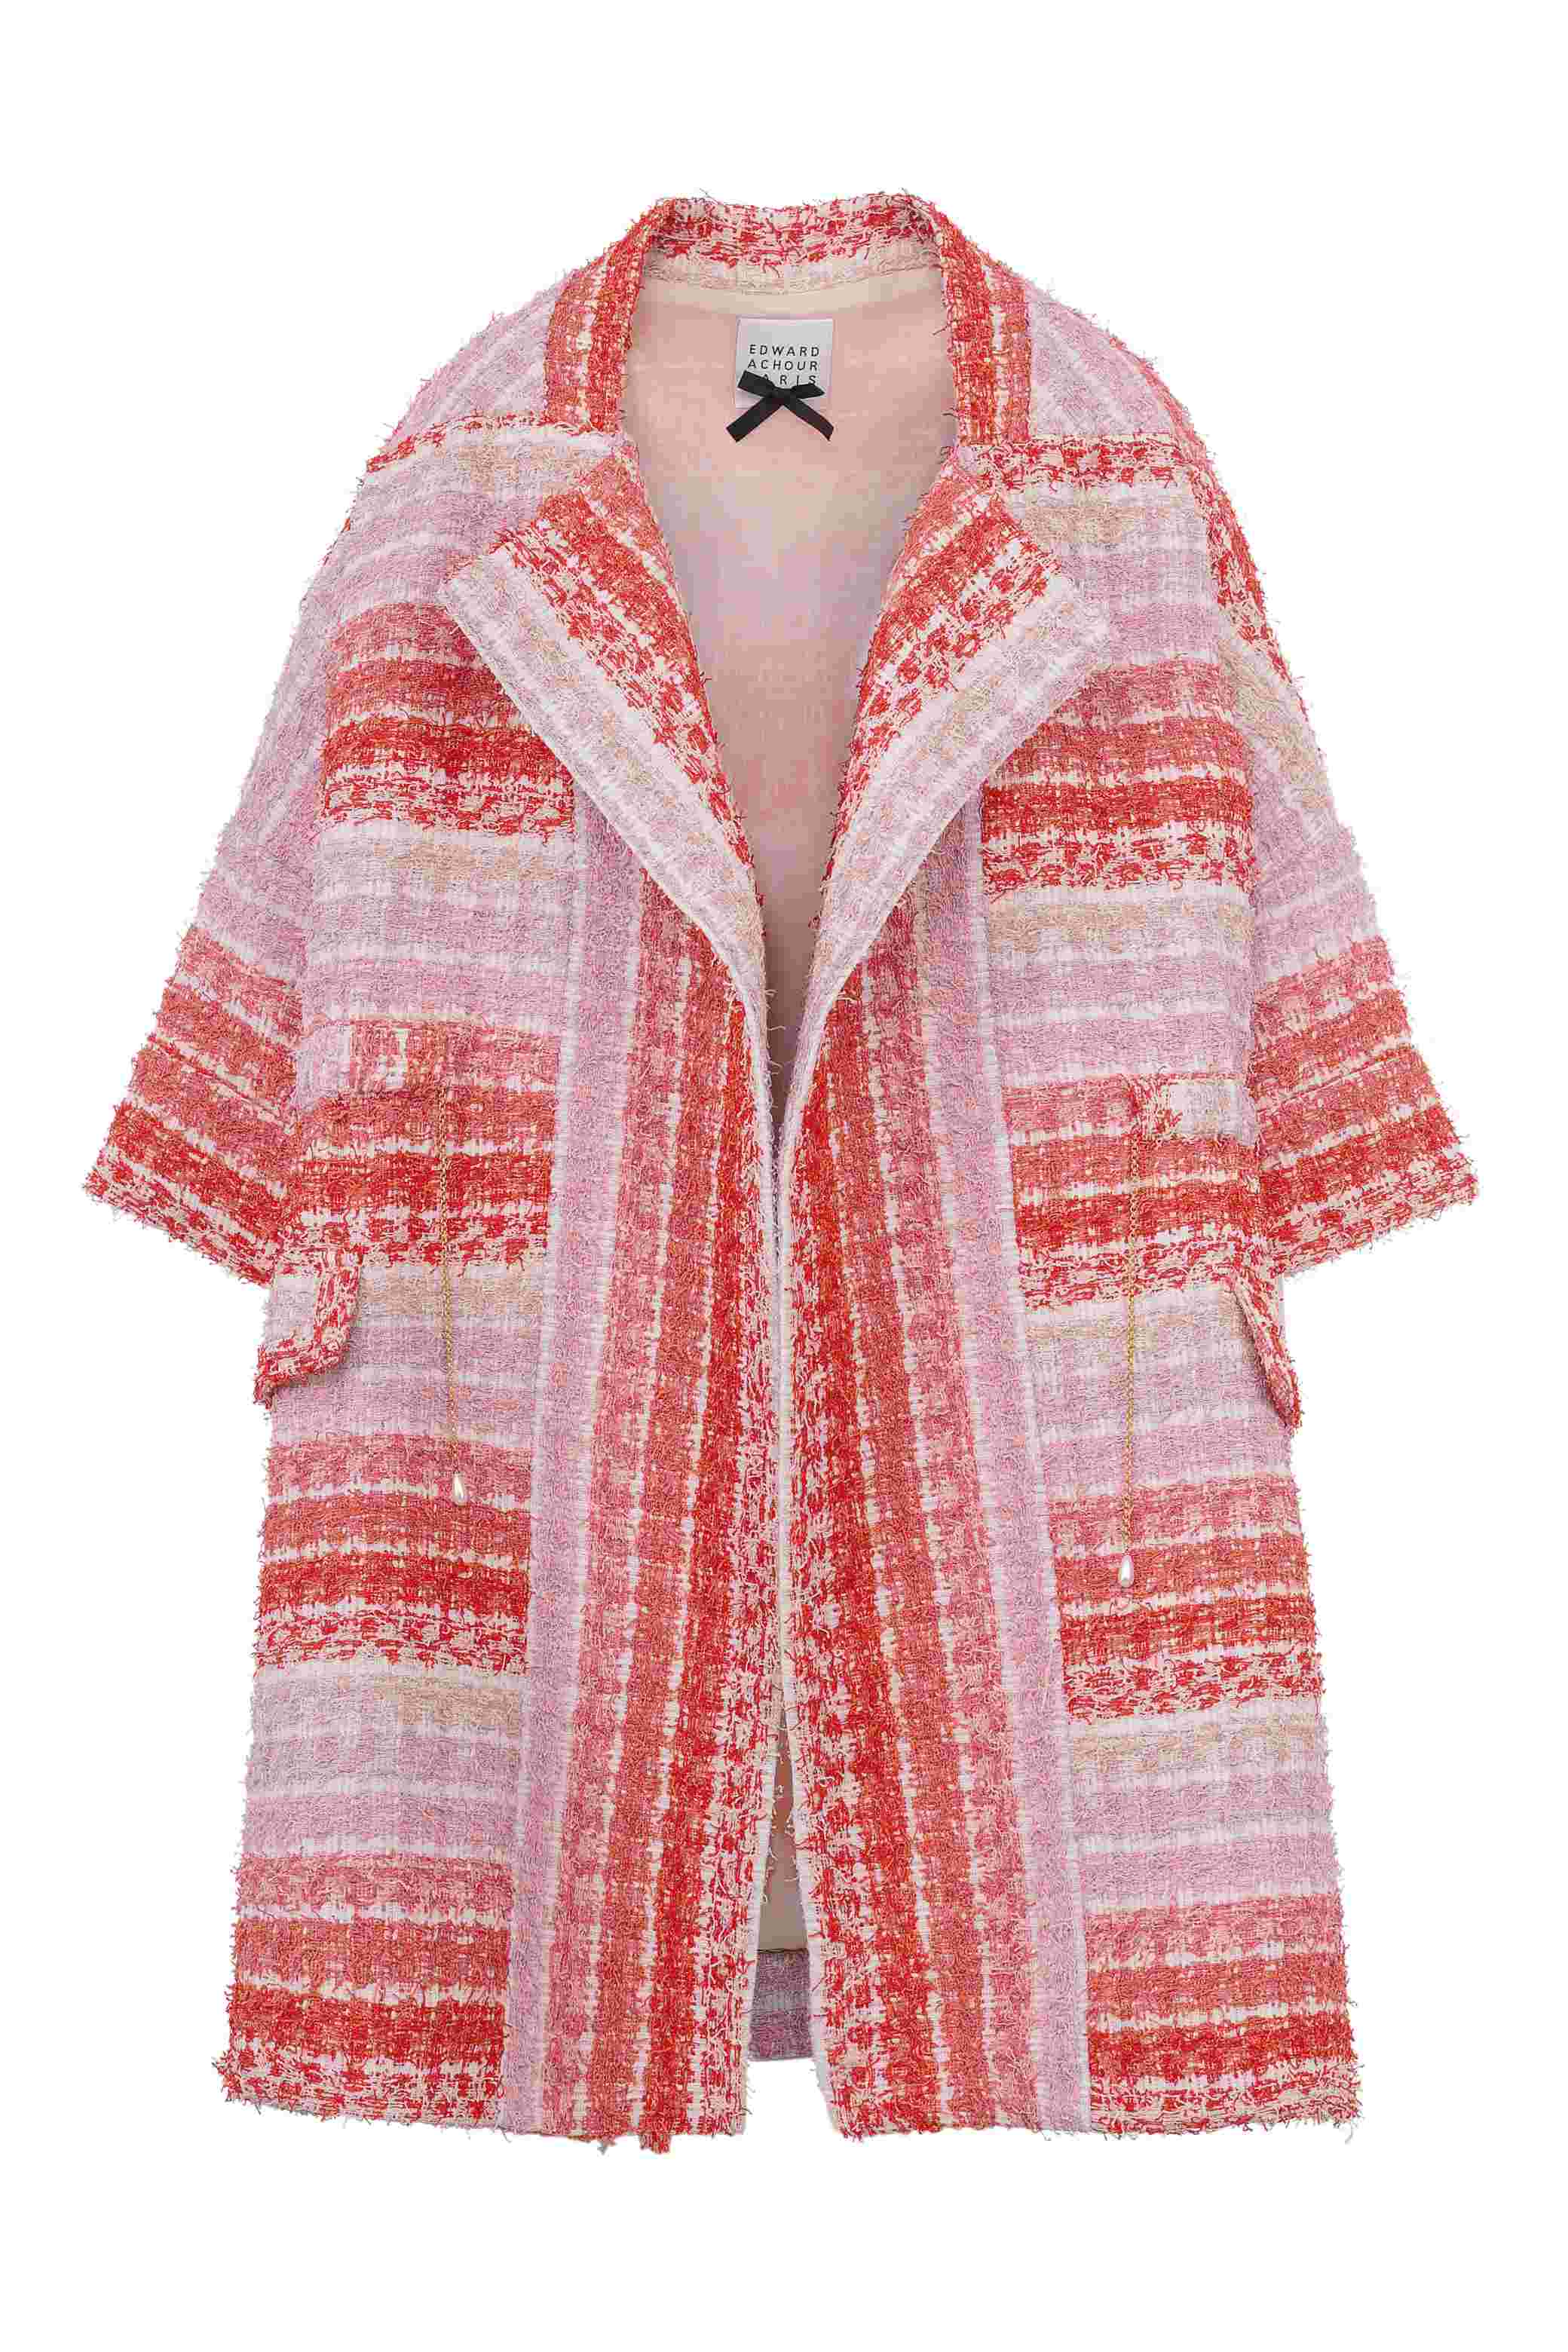 Manteau en tissu texturé aux tons nude rose corail et orange